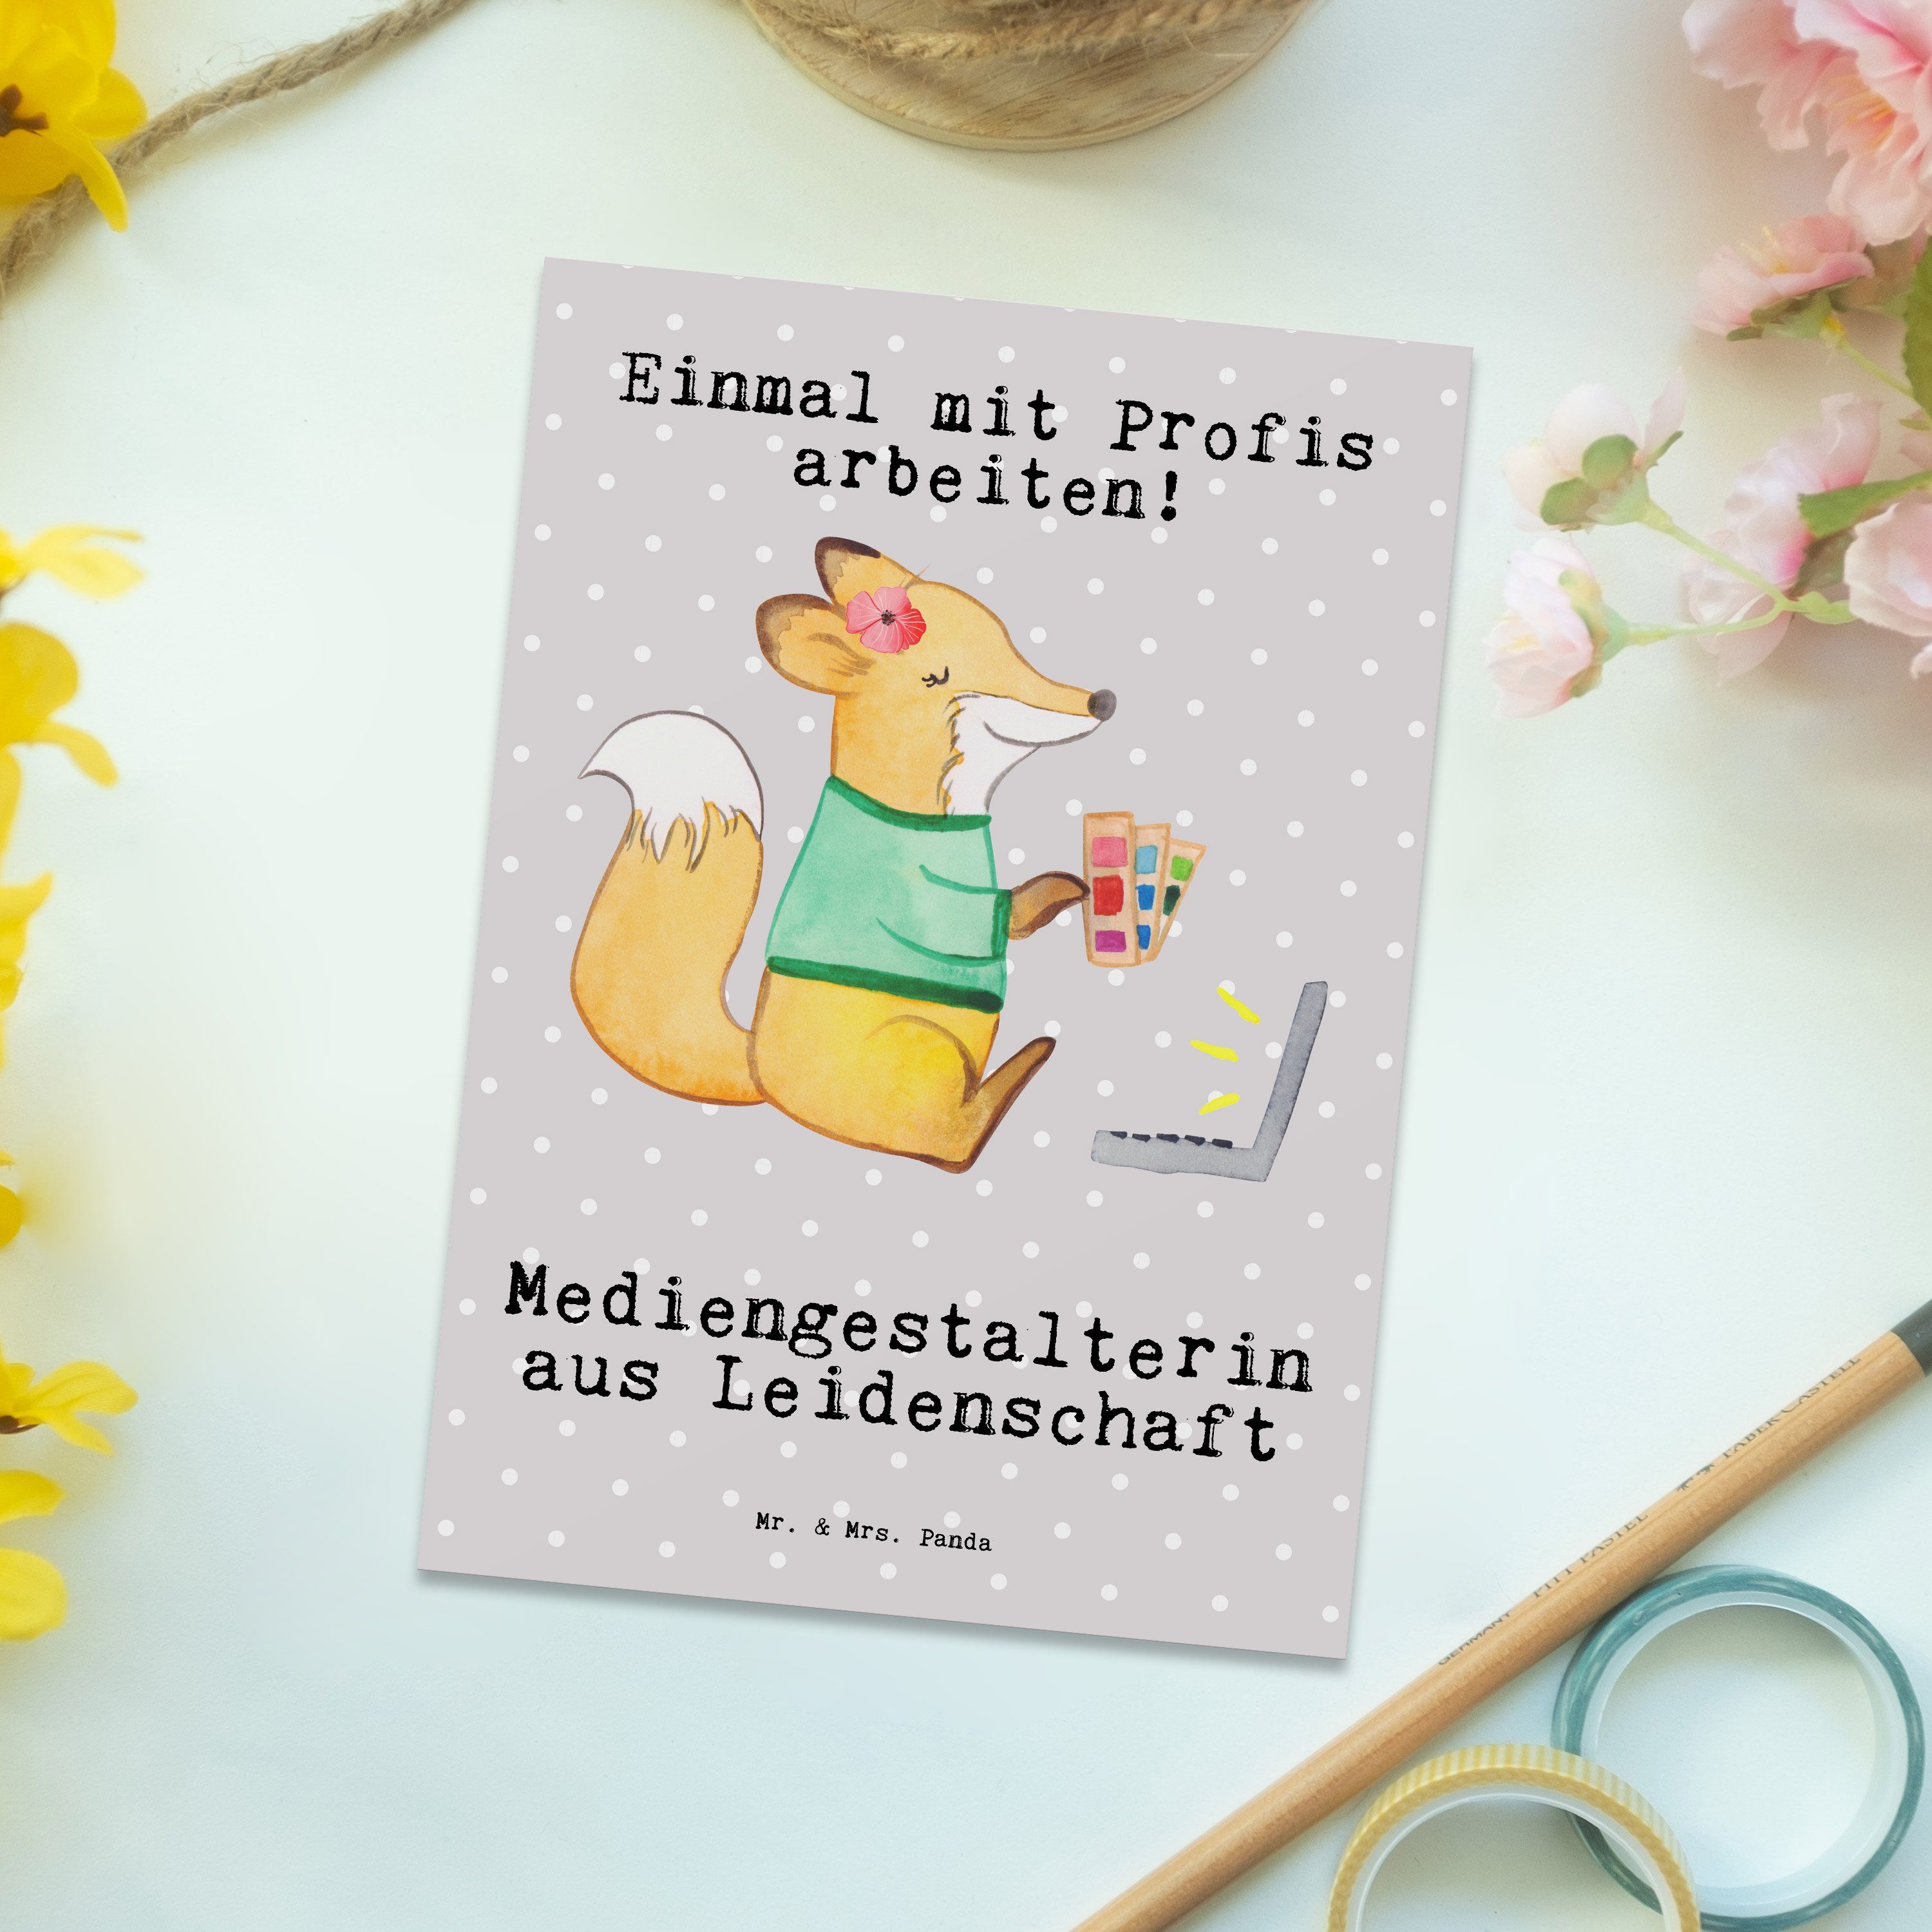 Mediengestalterin Grau Mr. Ansicht & - Geschenk, Leidenschaft Mrs. Panda aus - Pastell Postkarte